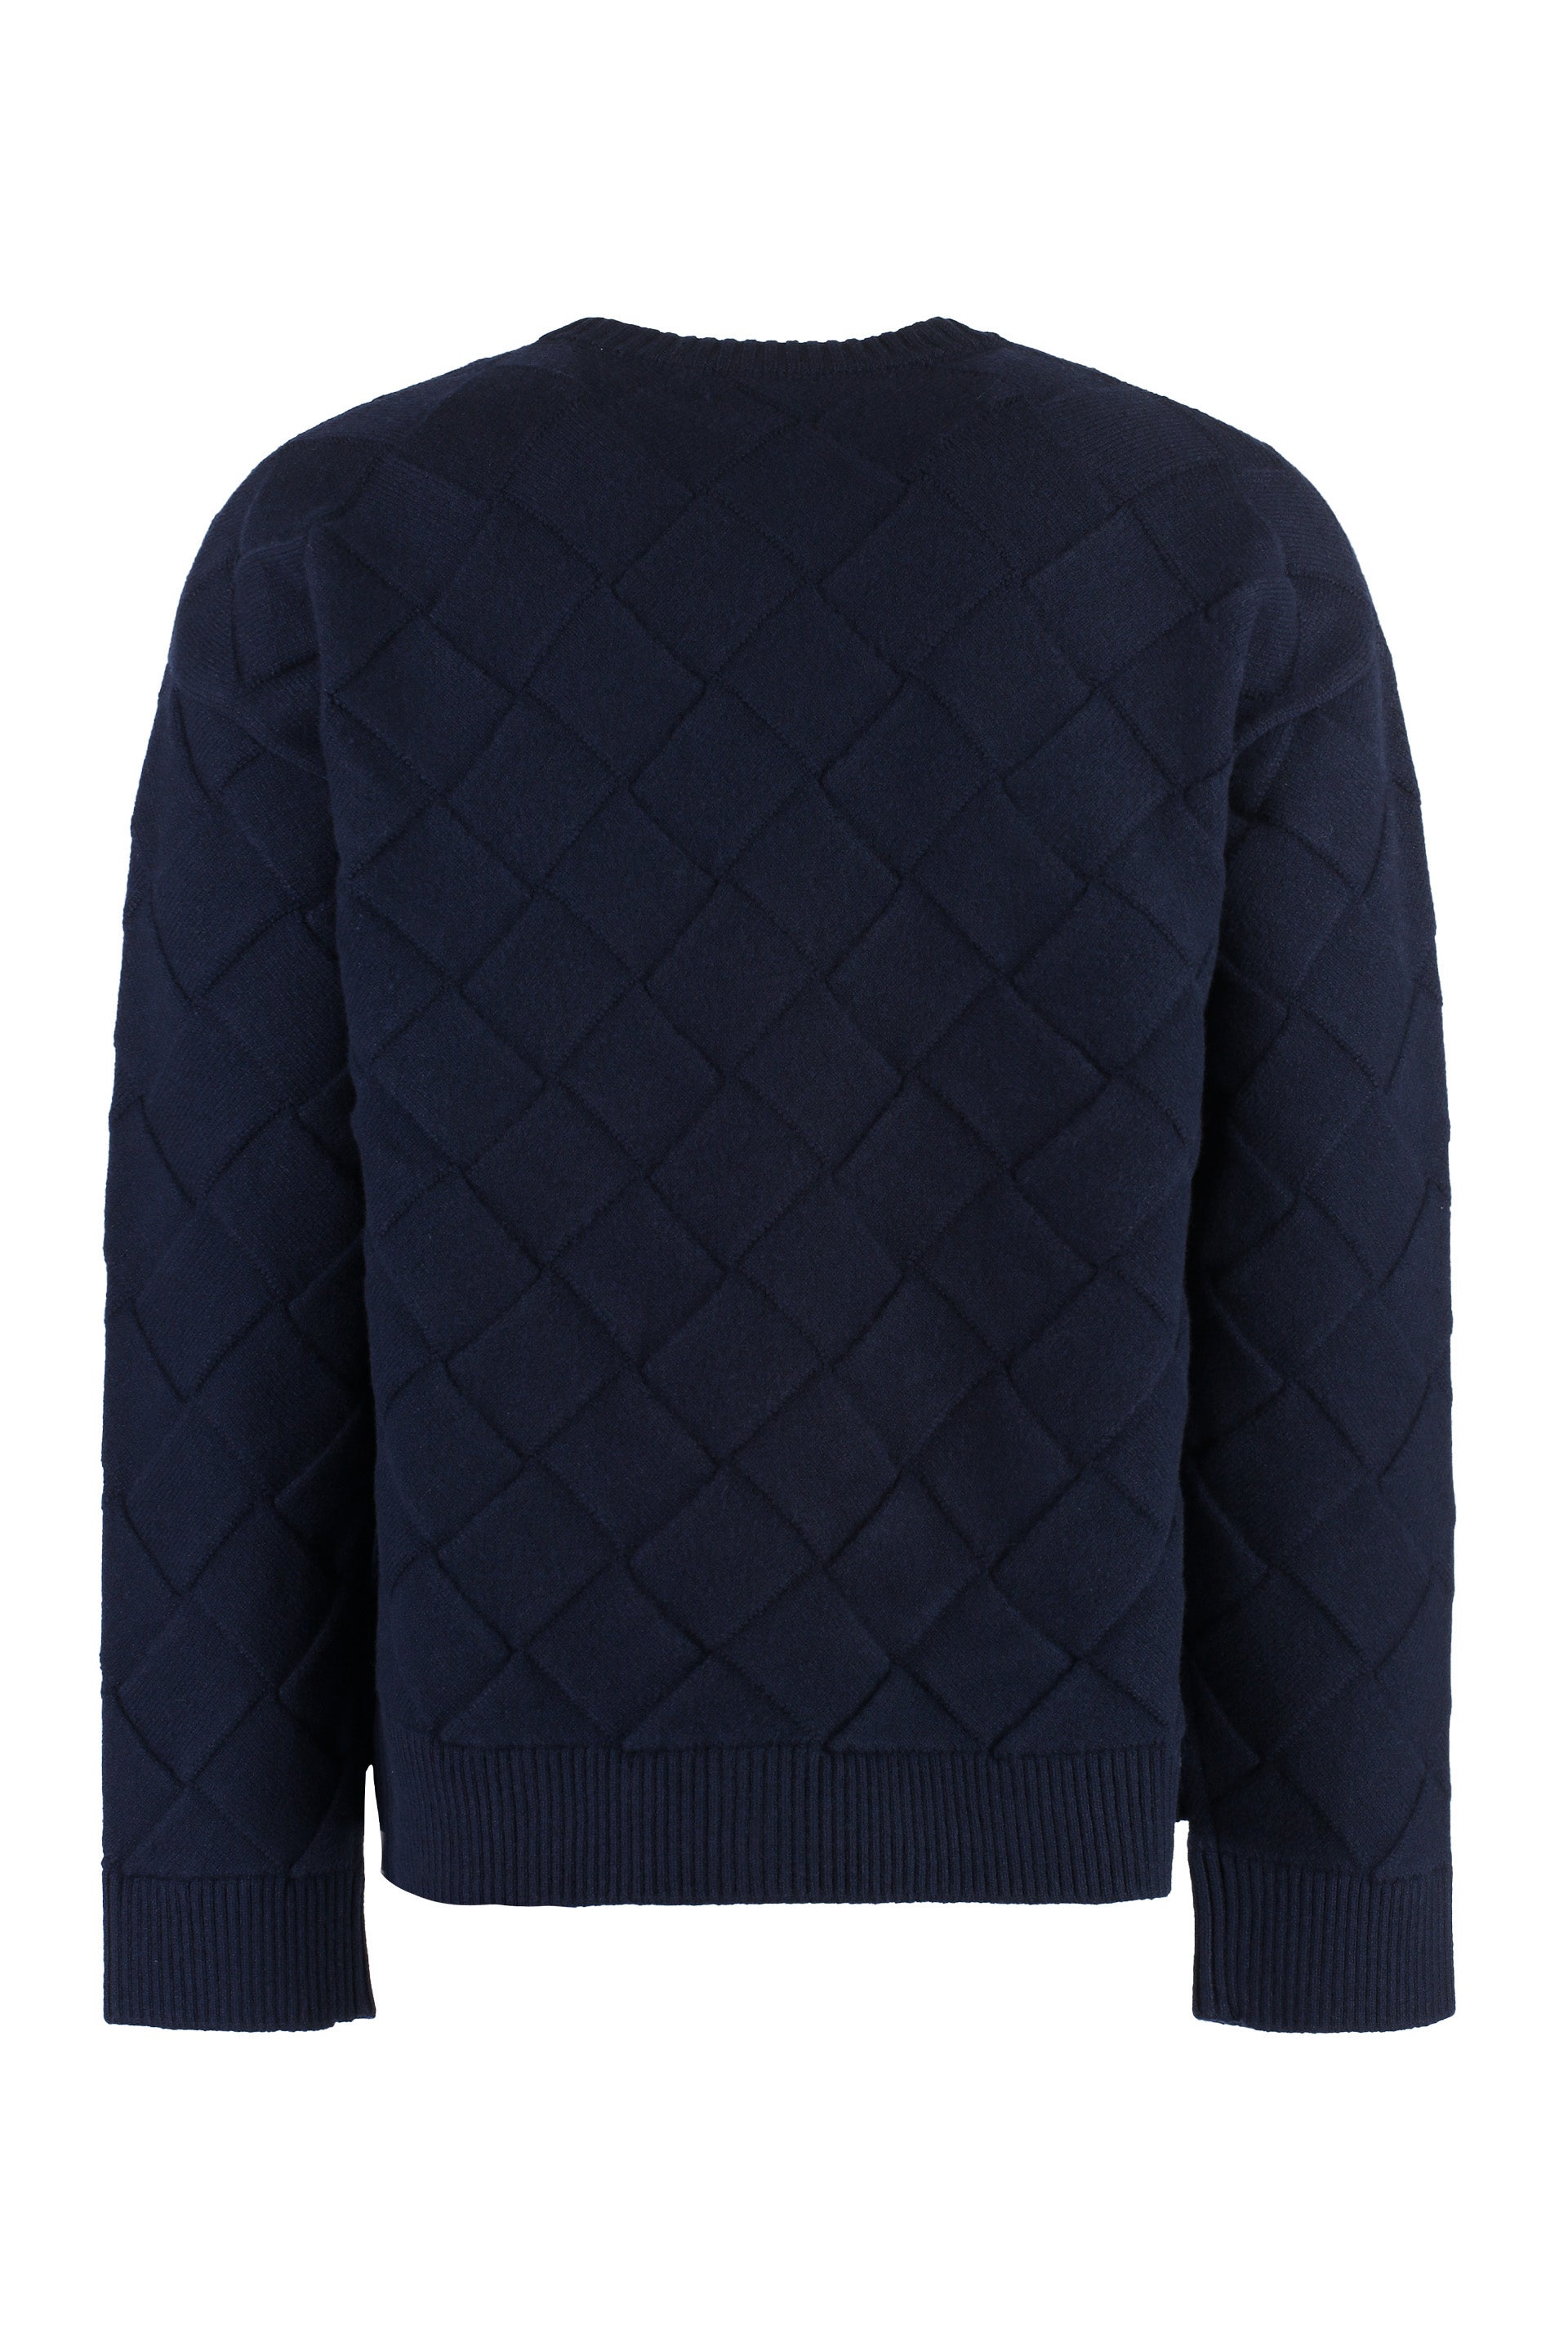 Shop Bottega Veneta Blue Crew-neck Wool Sweater For Men